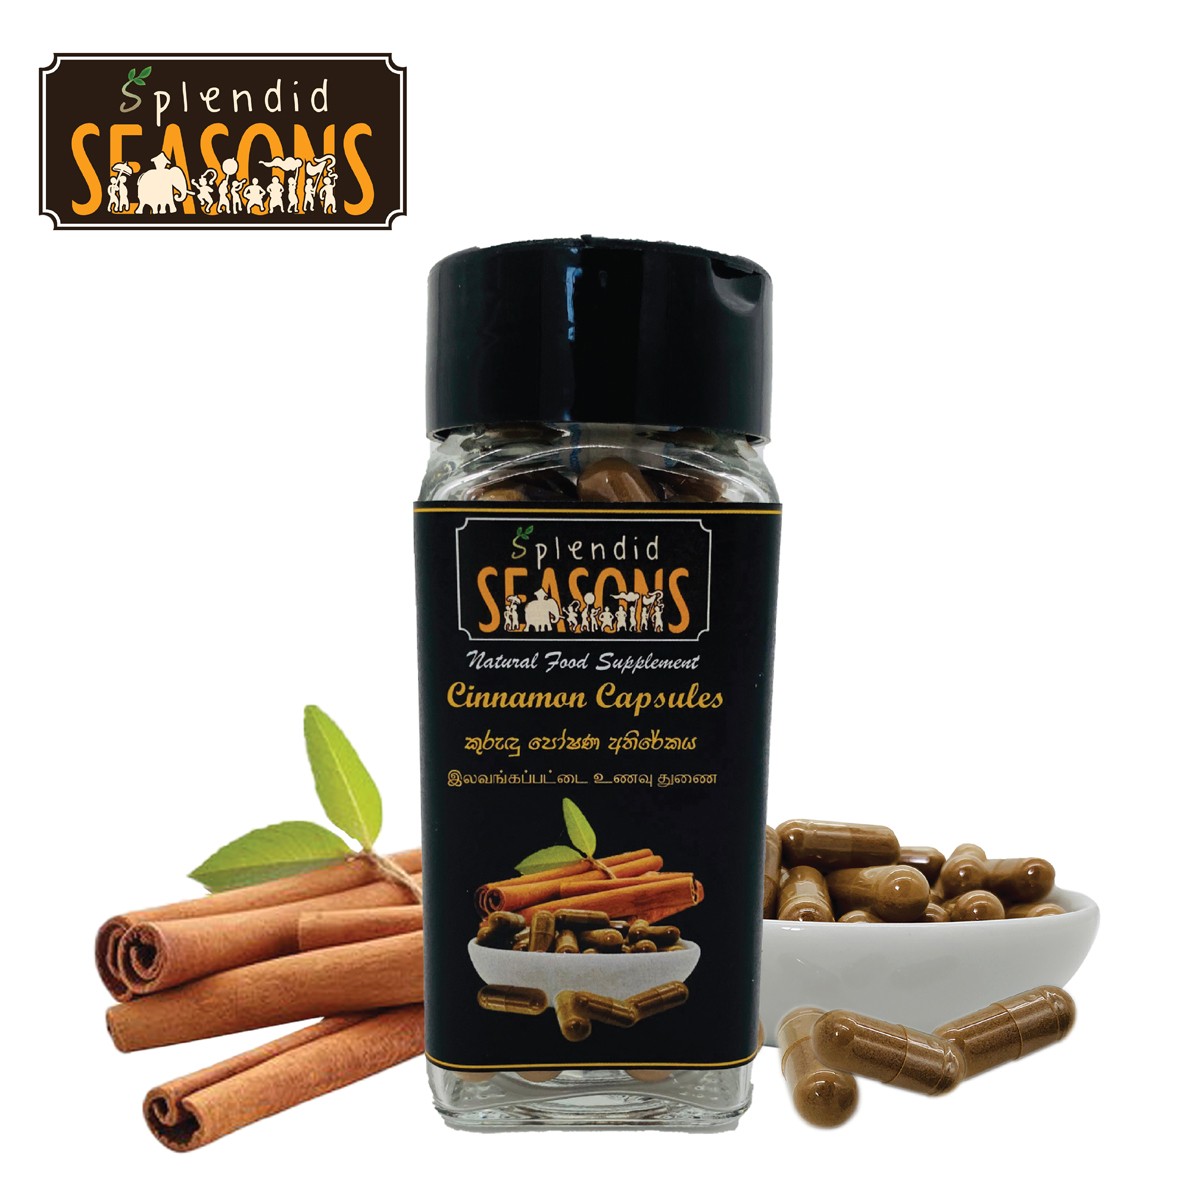 Cinnamon Capsules - Natural Food Supplement - 60 pcs.